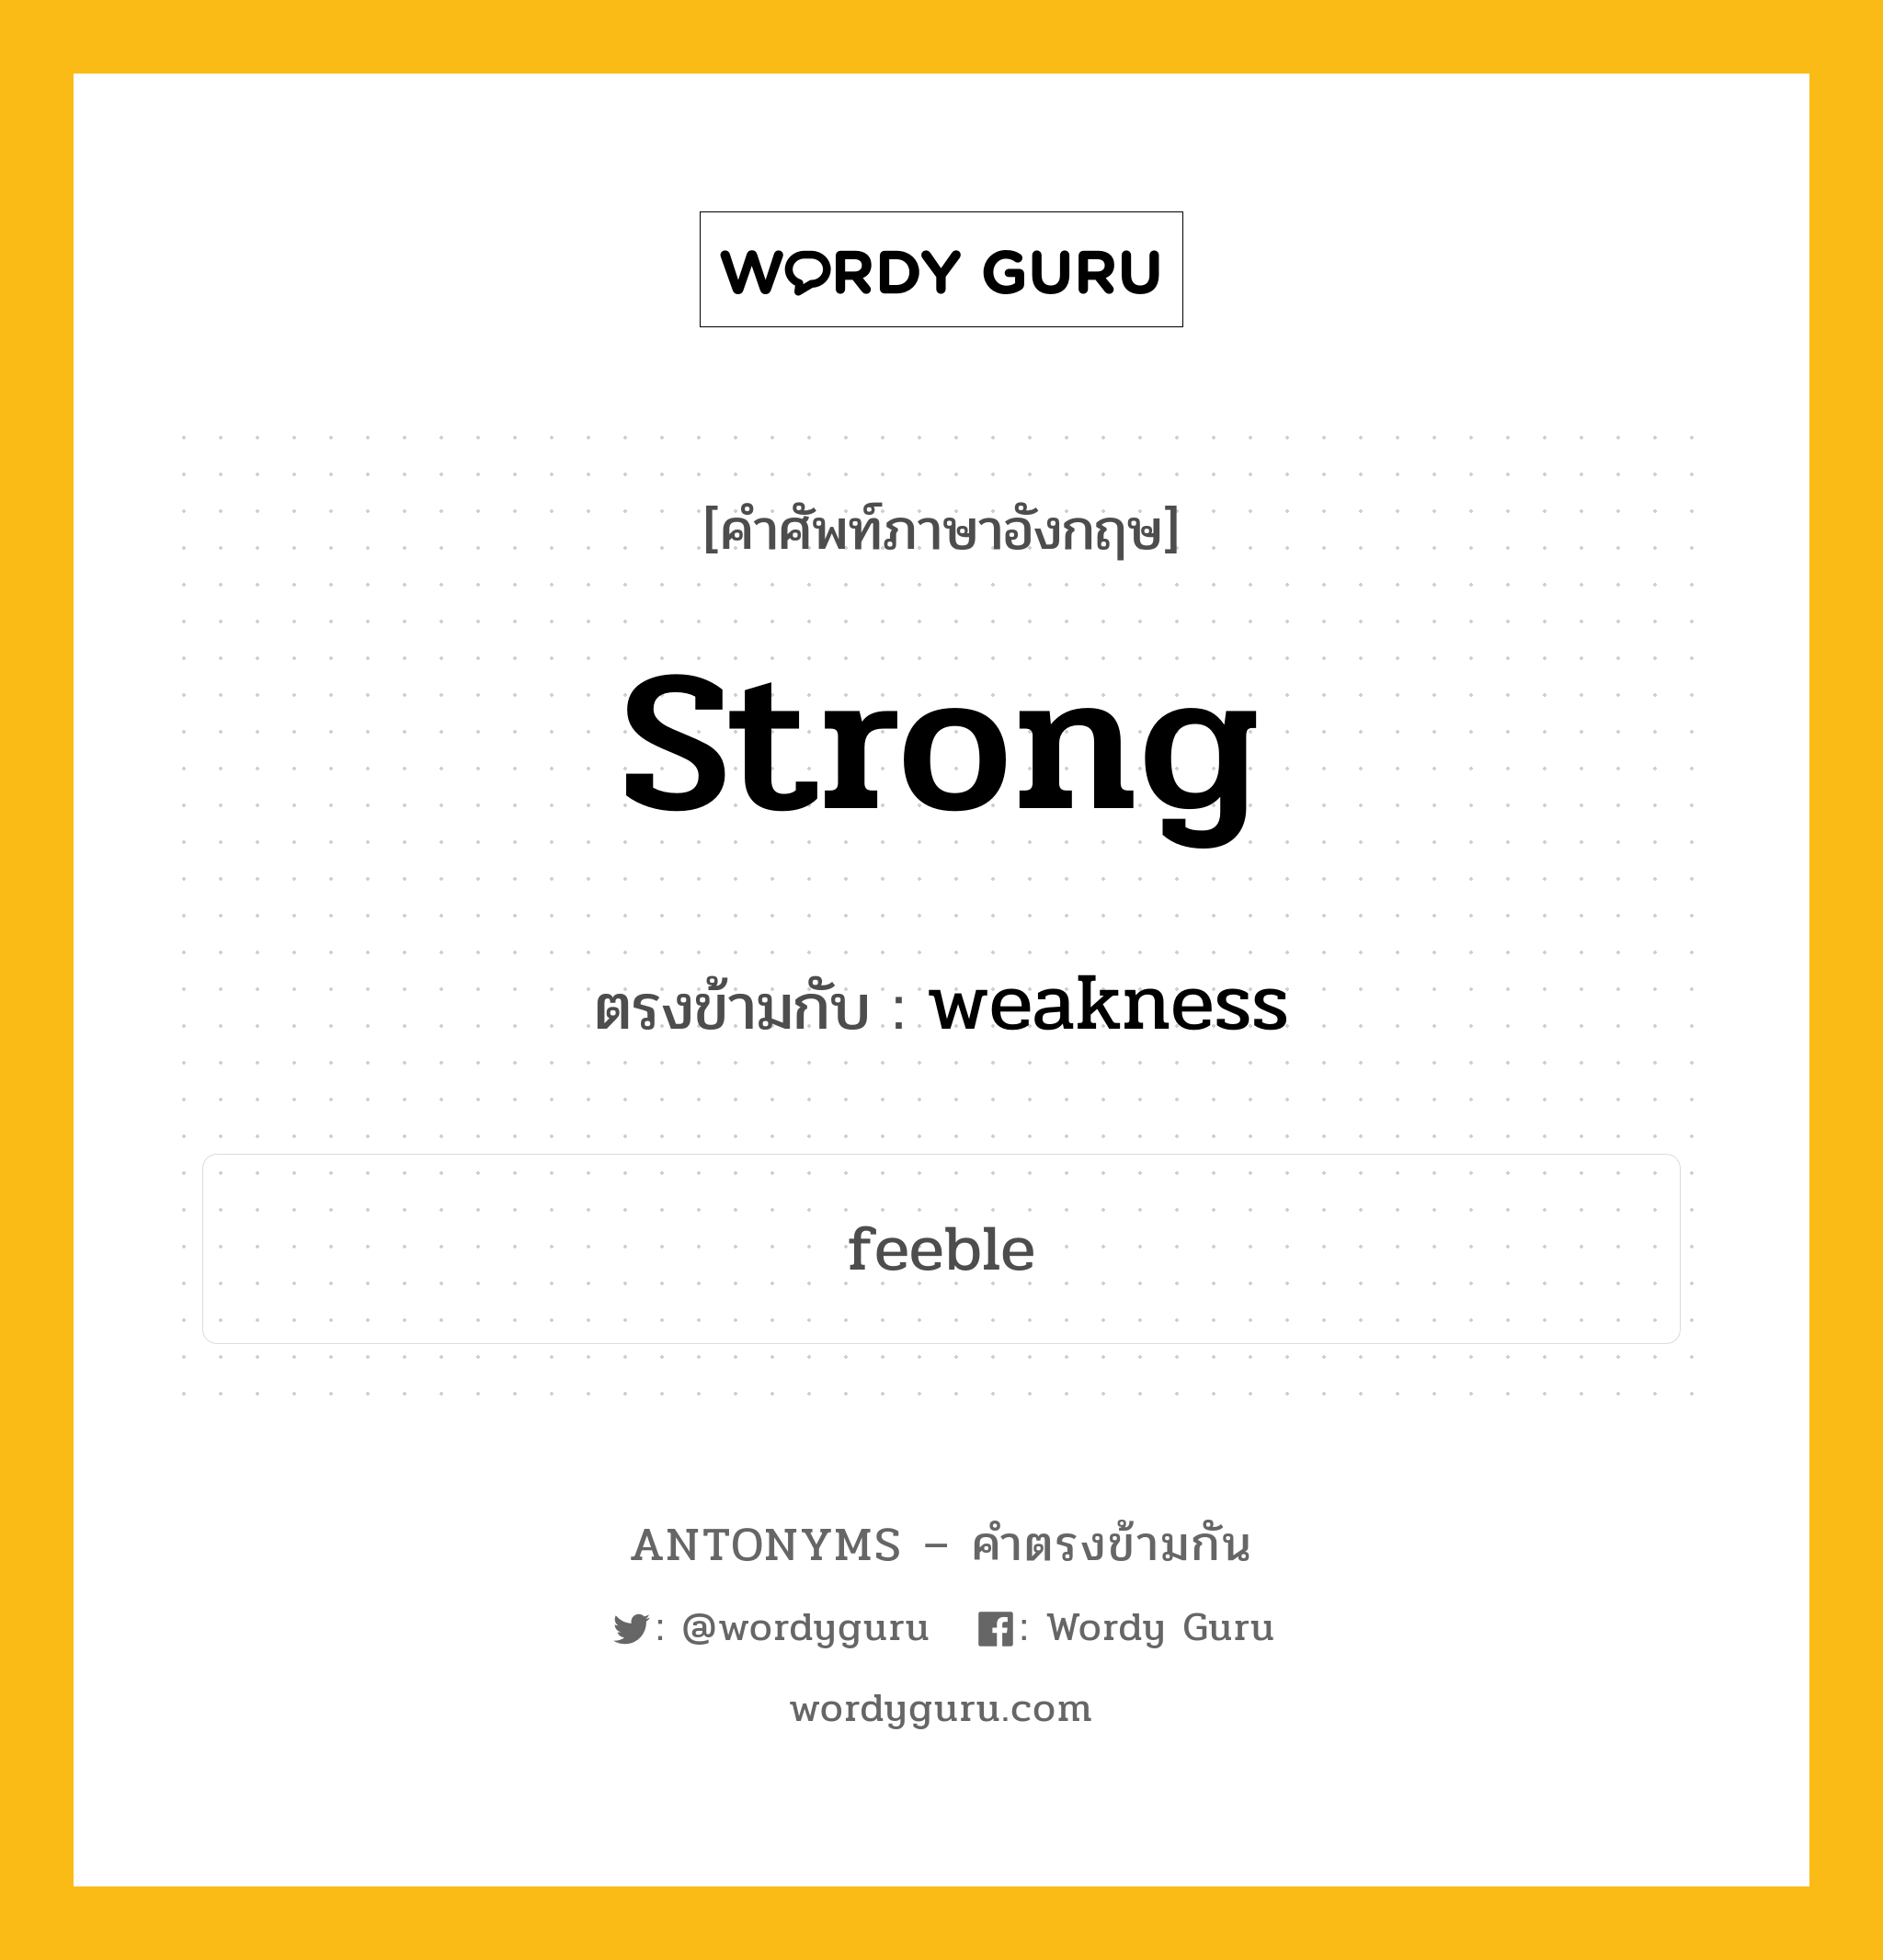 strong เป็นคำตรงข้ามกับคำไหนบ้าง?, คำศัพท์ภาษาอังกฤษ strong ตรงข้ามกับ weakness หมวด weakness